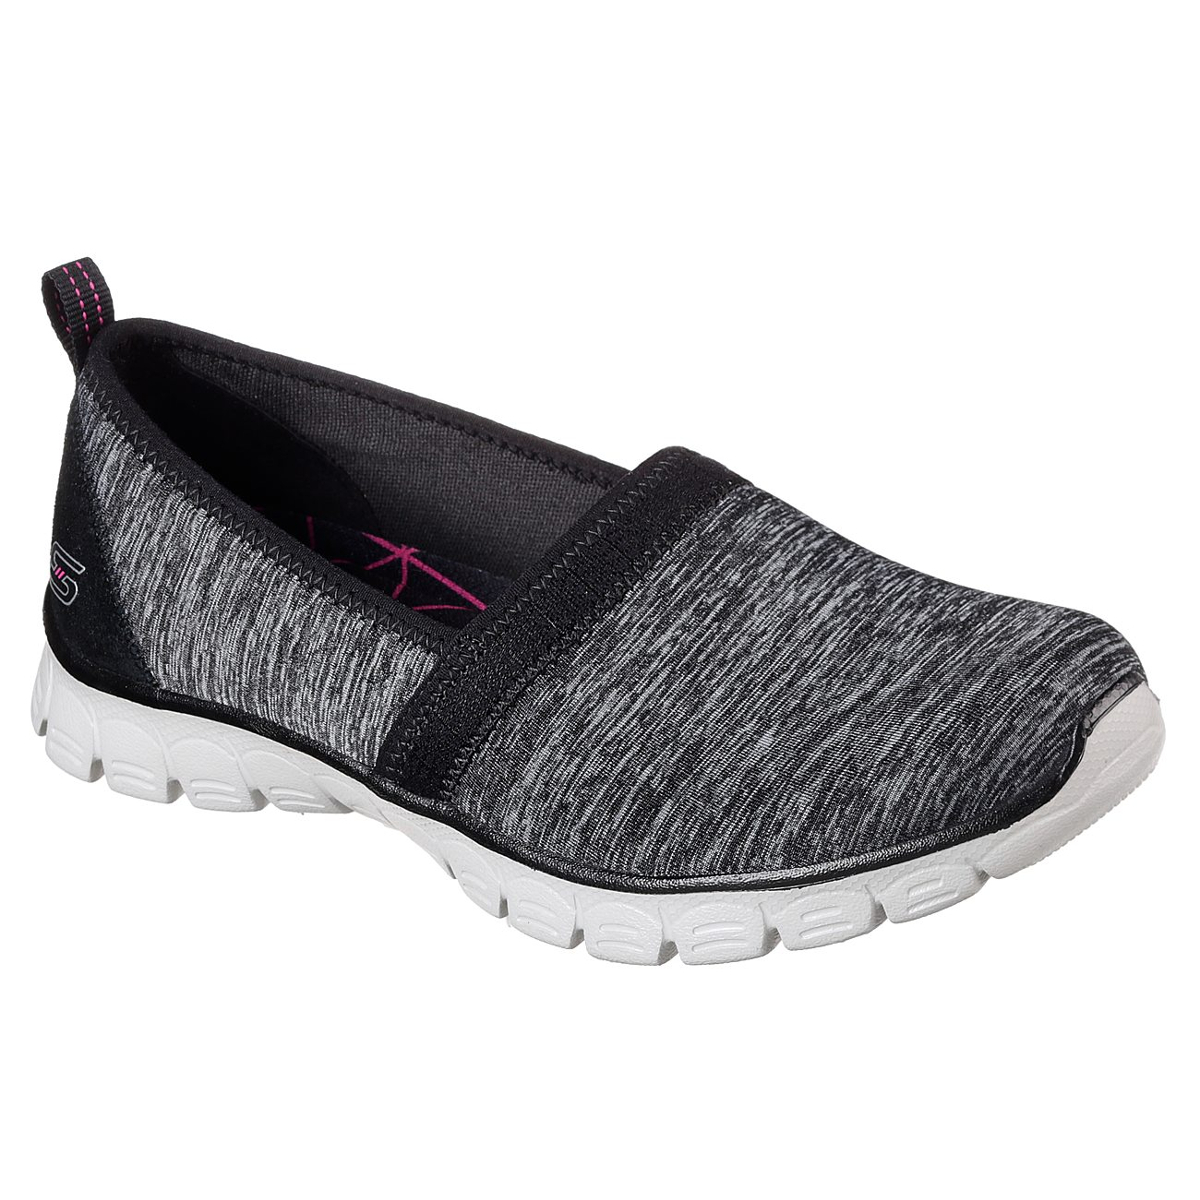 Skechers Women's Ez Flex 3.0 - Swift Motion Casual Slip-On Shoes - Black, 7